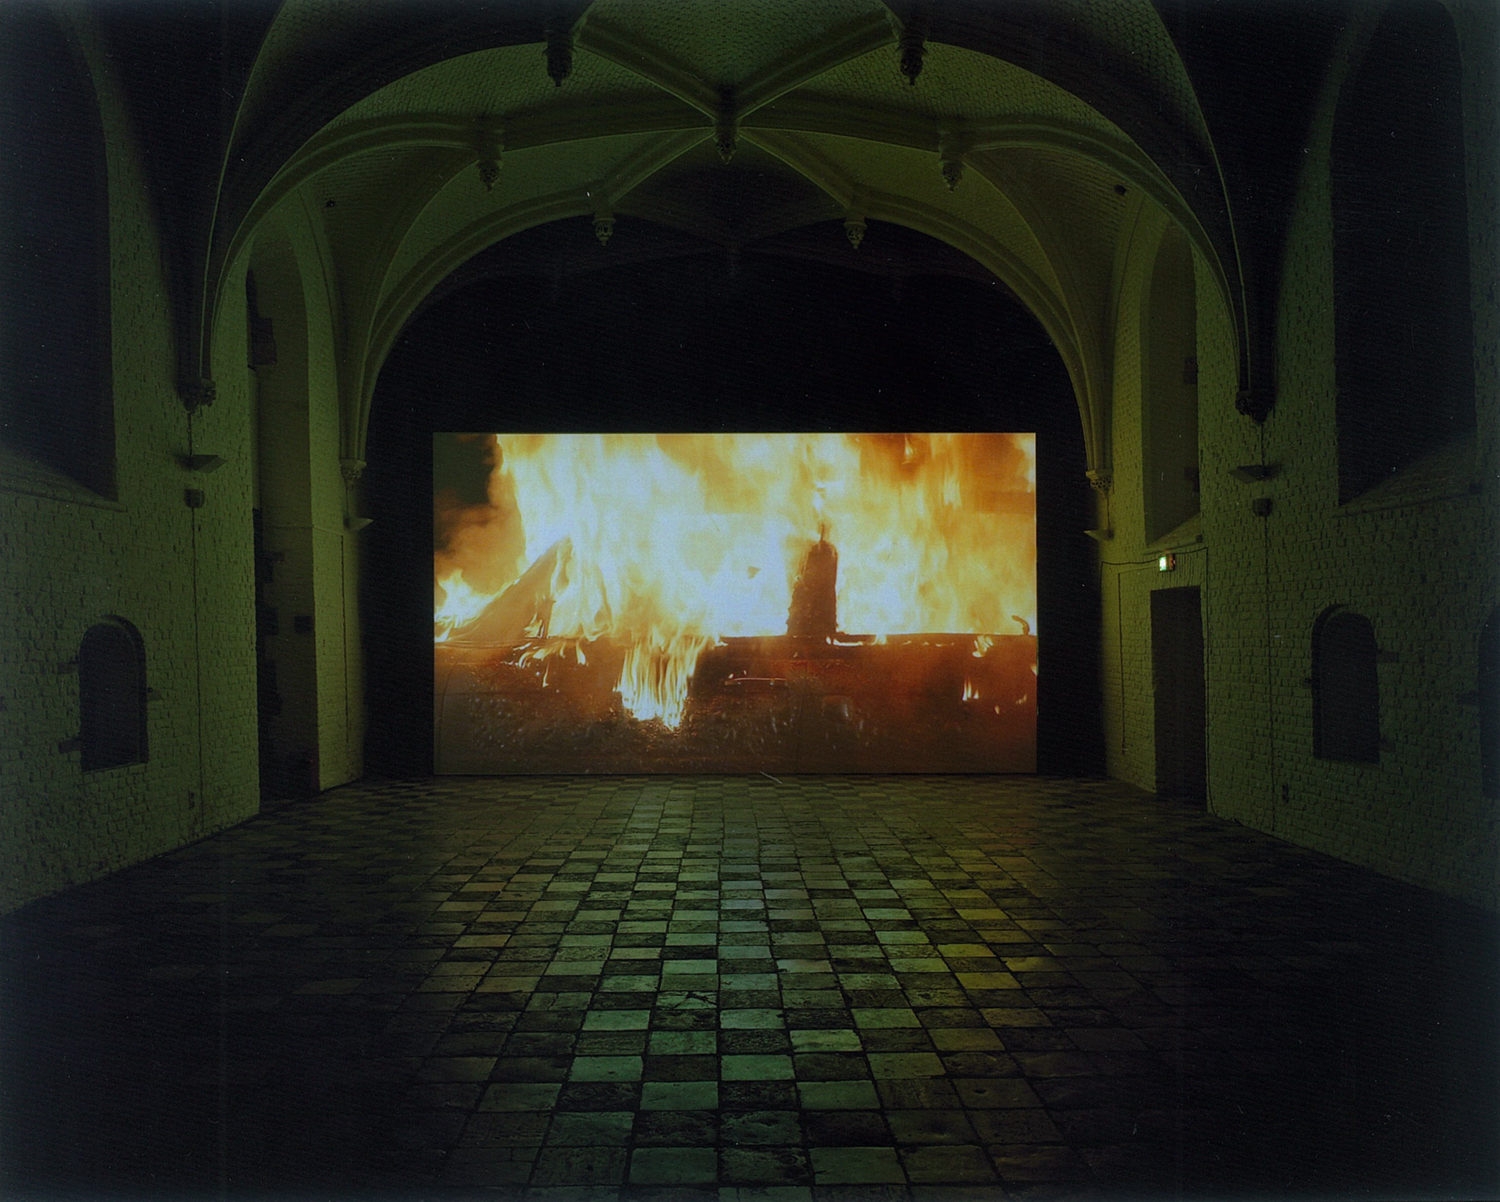 'Burning Car', 2009
Installation image | Burning Car | SUPERFLEX